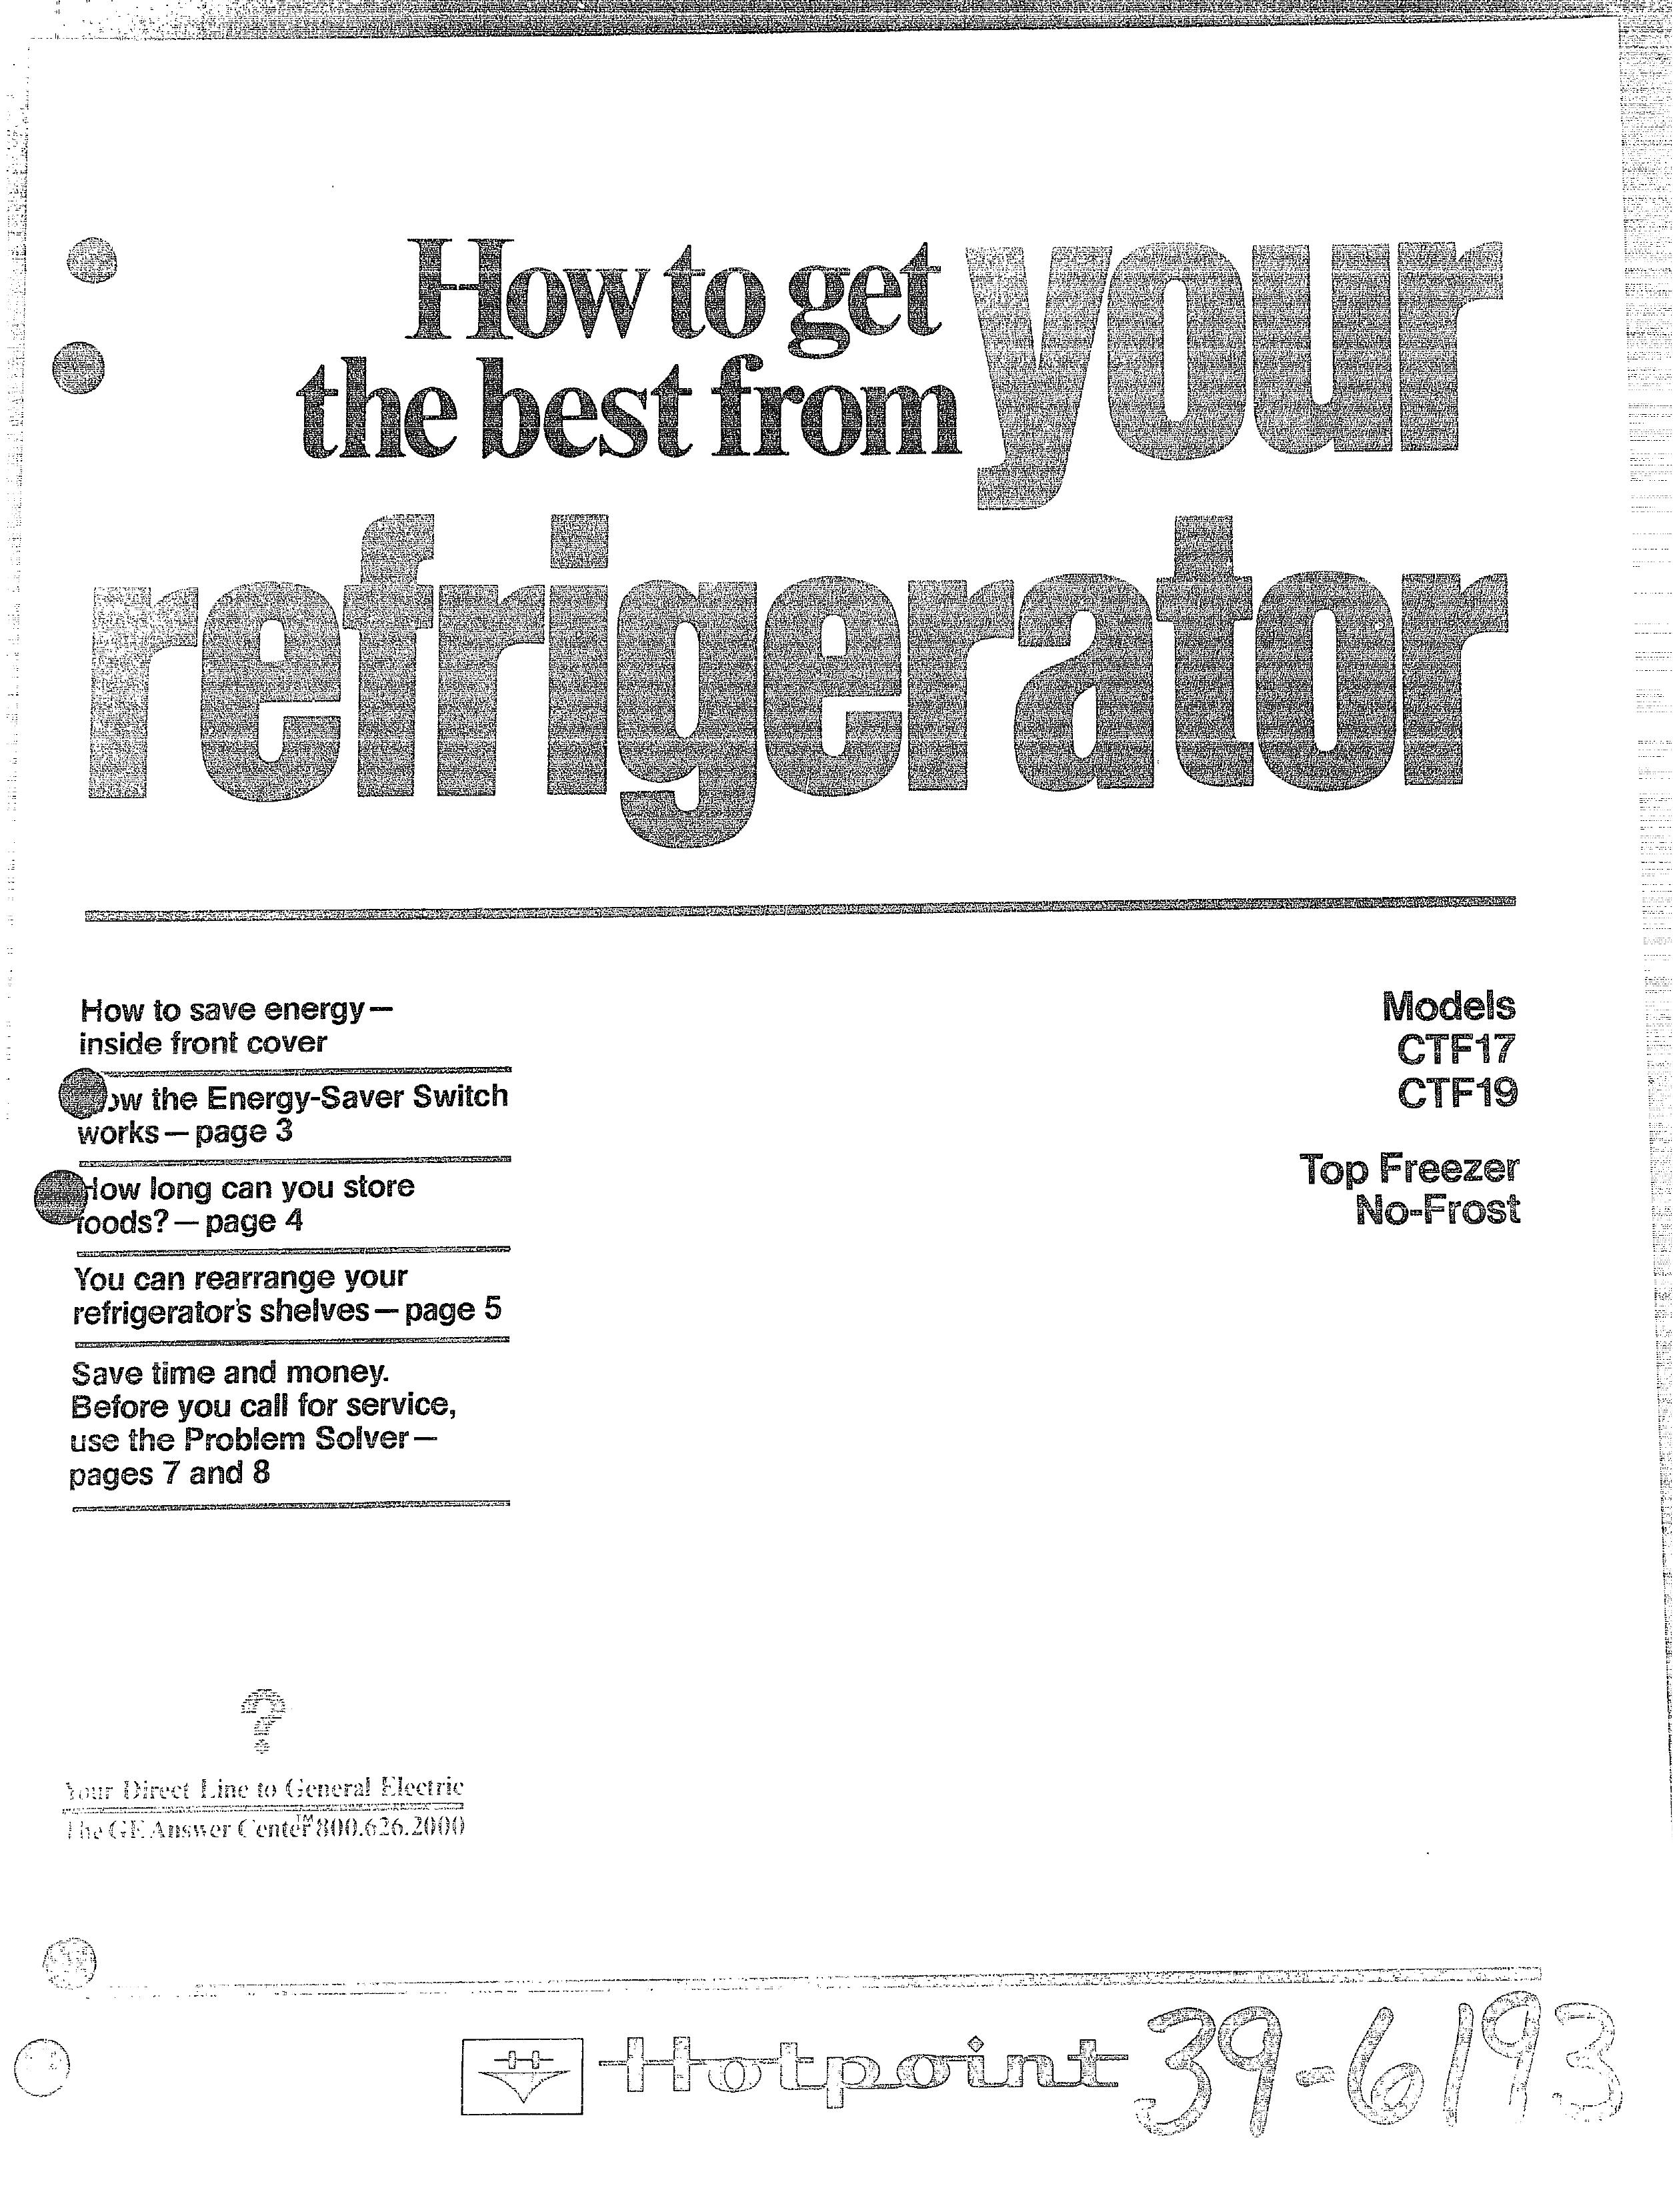 Hotpoint CTF19 Refrigerator User Manual